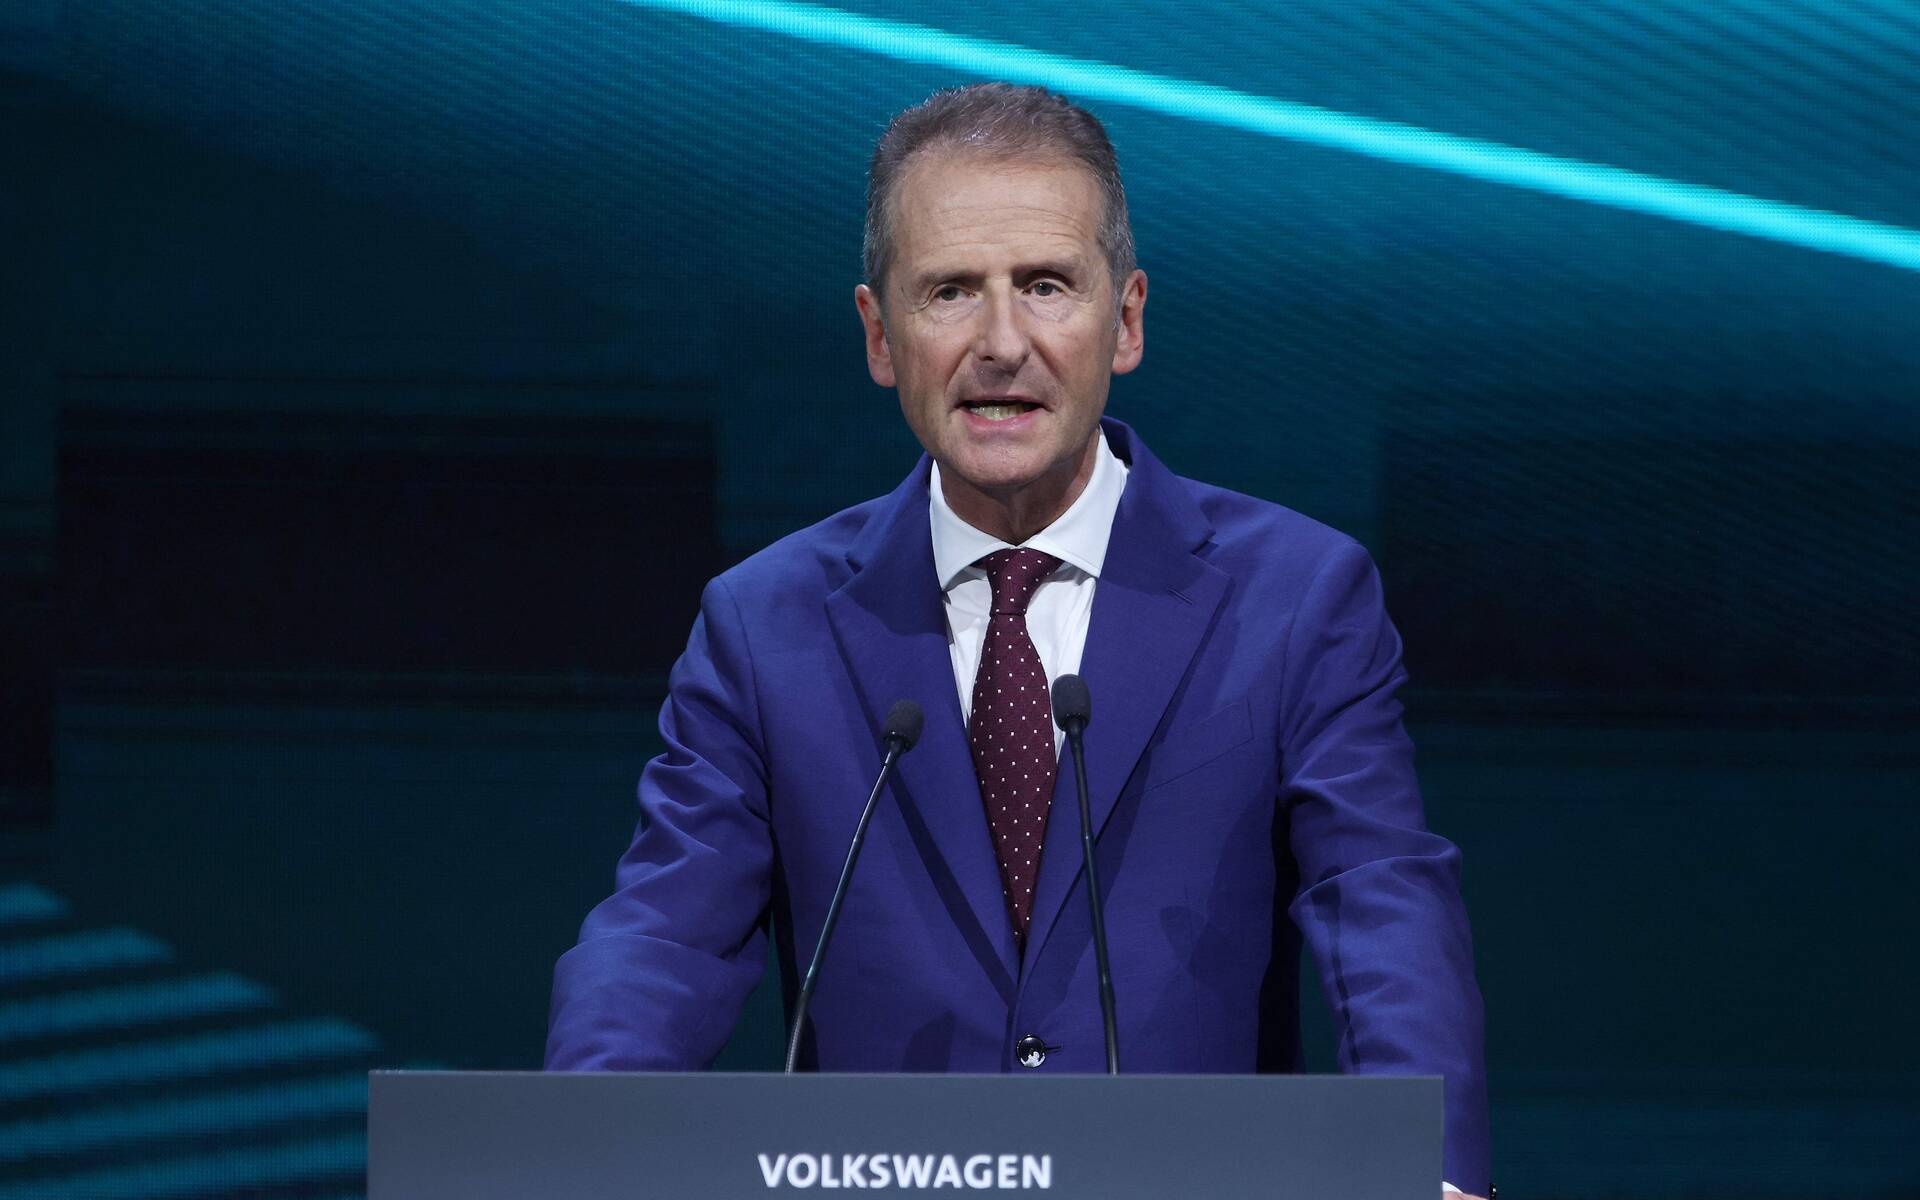 Le nouveau patron de Volkswagen face au chantier de la voiture